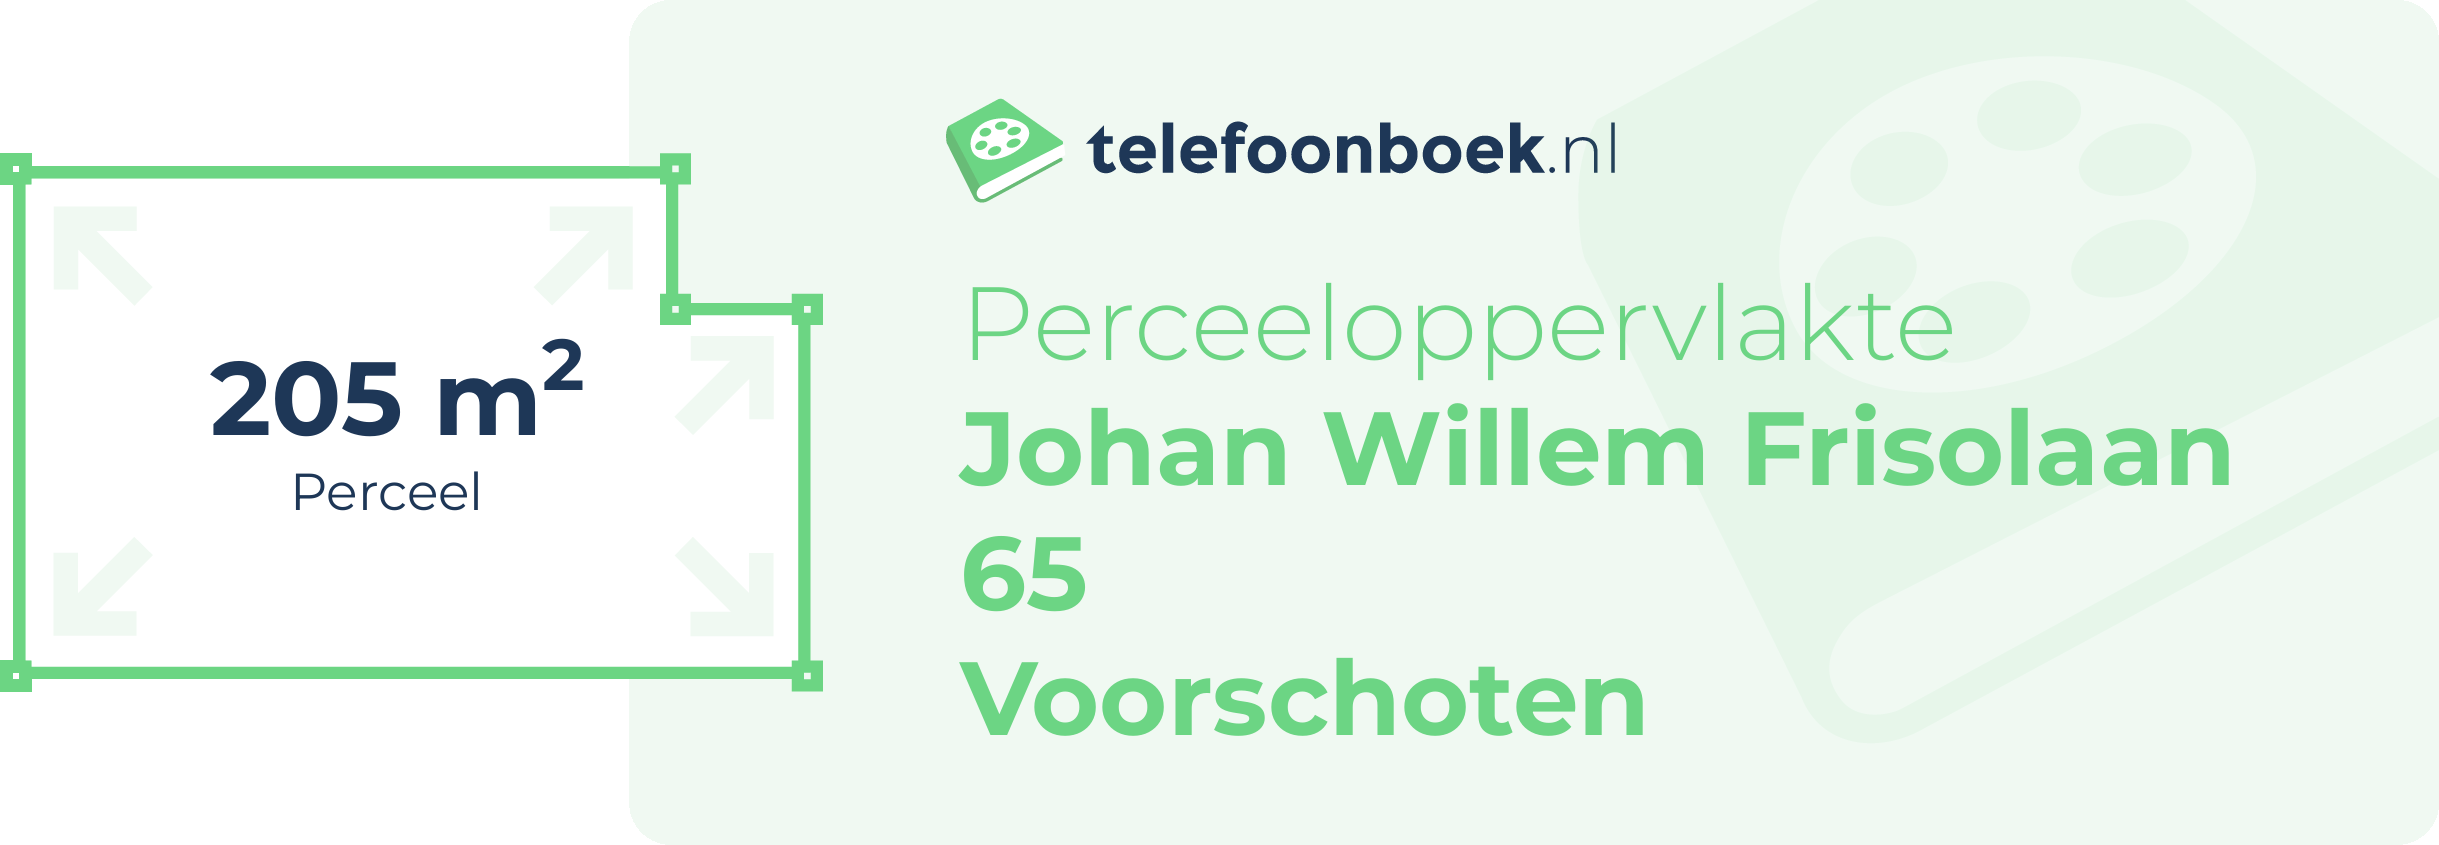 Perceeloppervlakte Johan Willem Frisolaan 65 Voorschoten